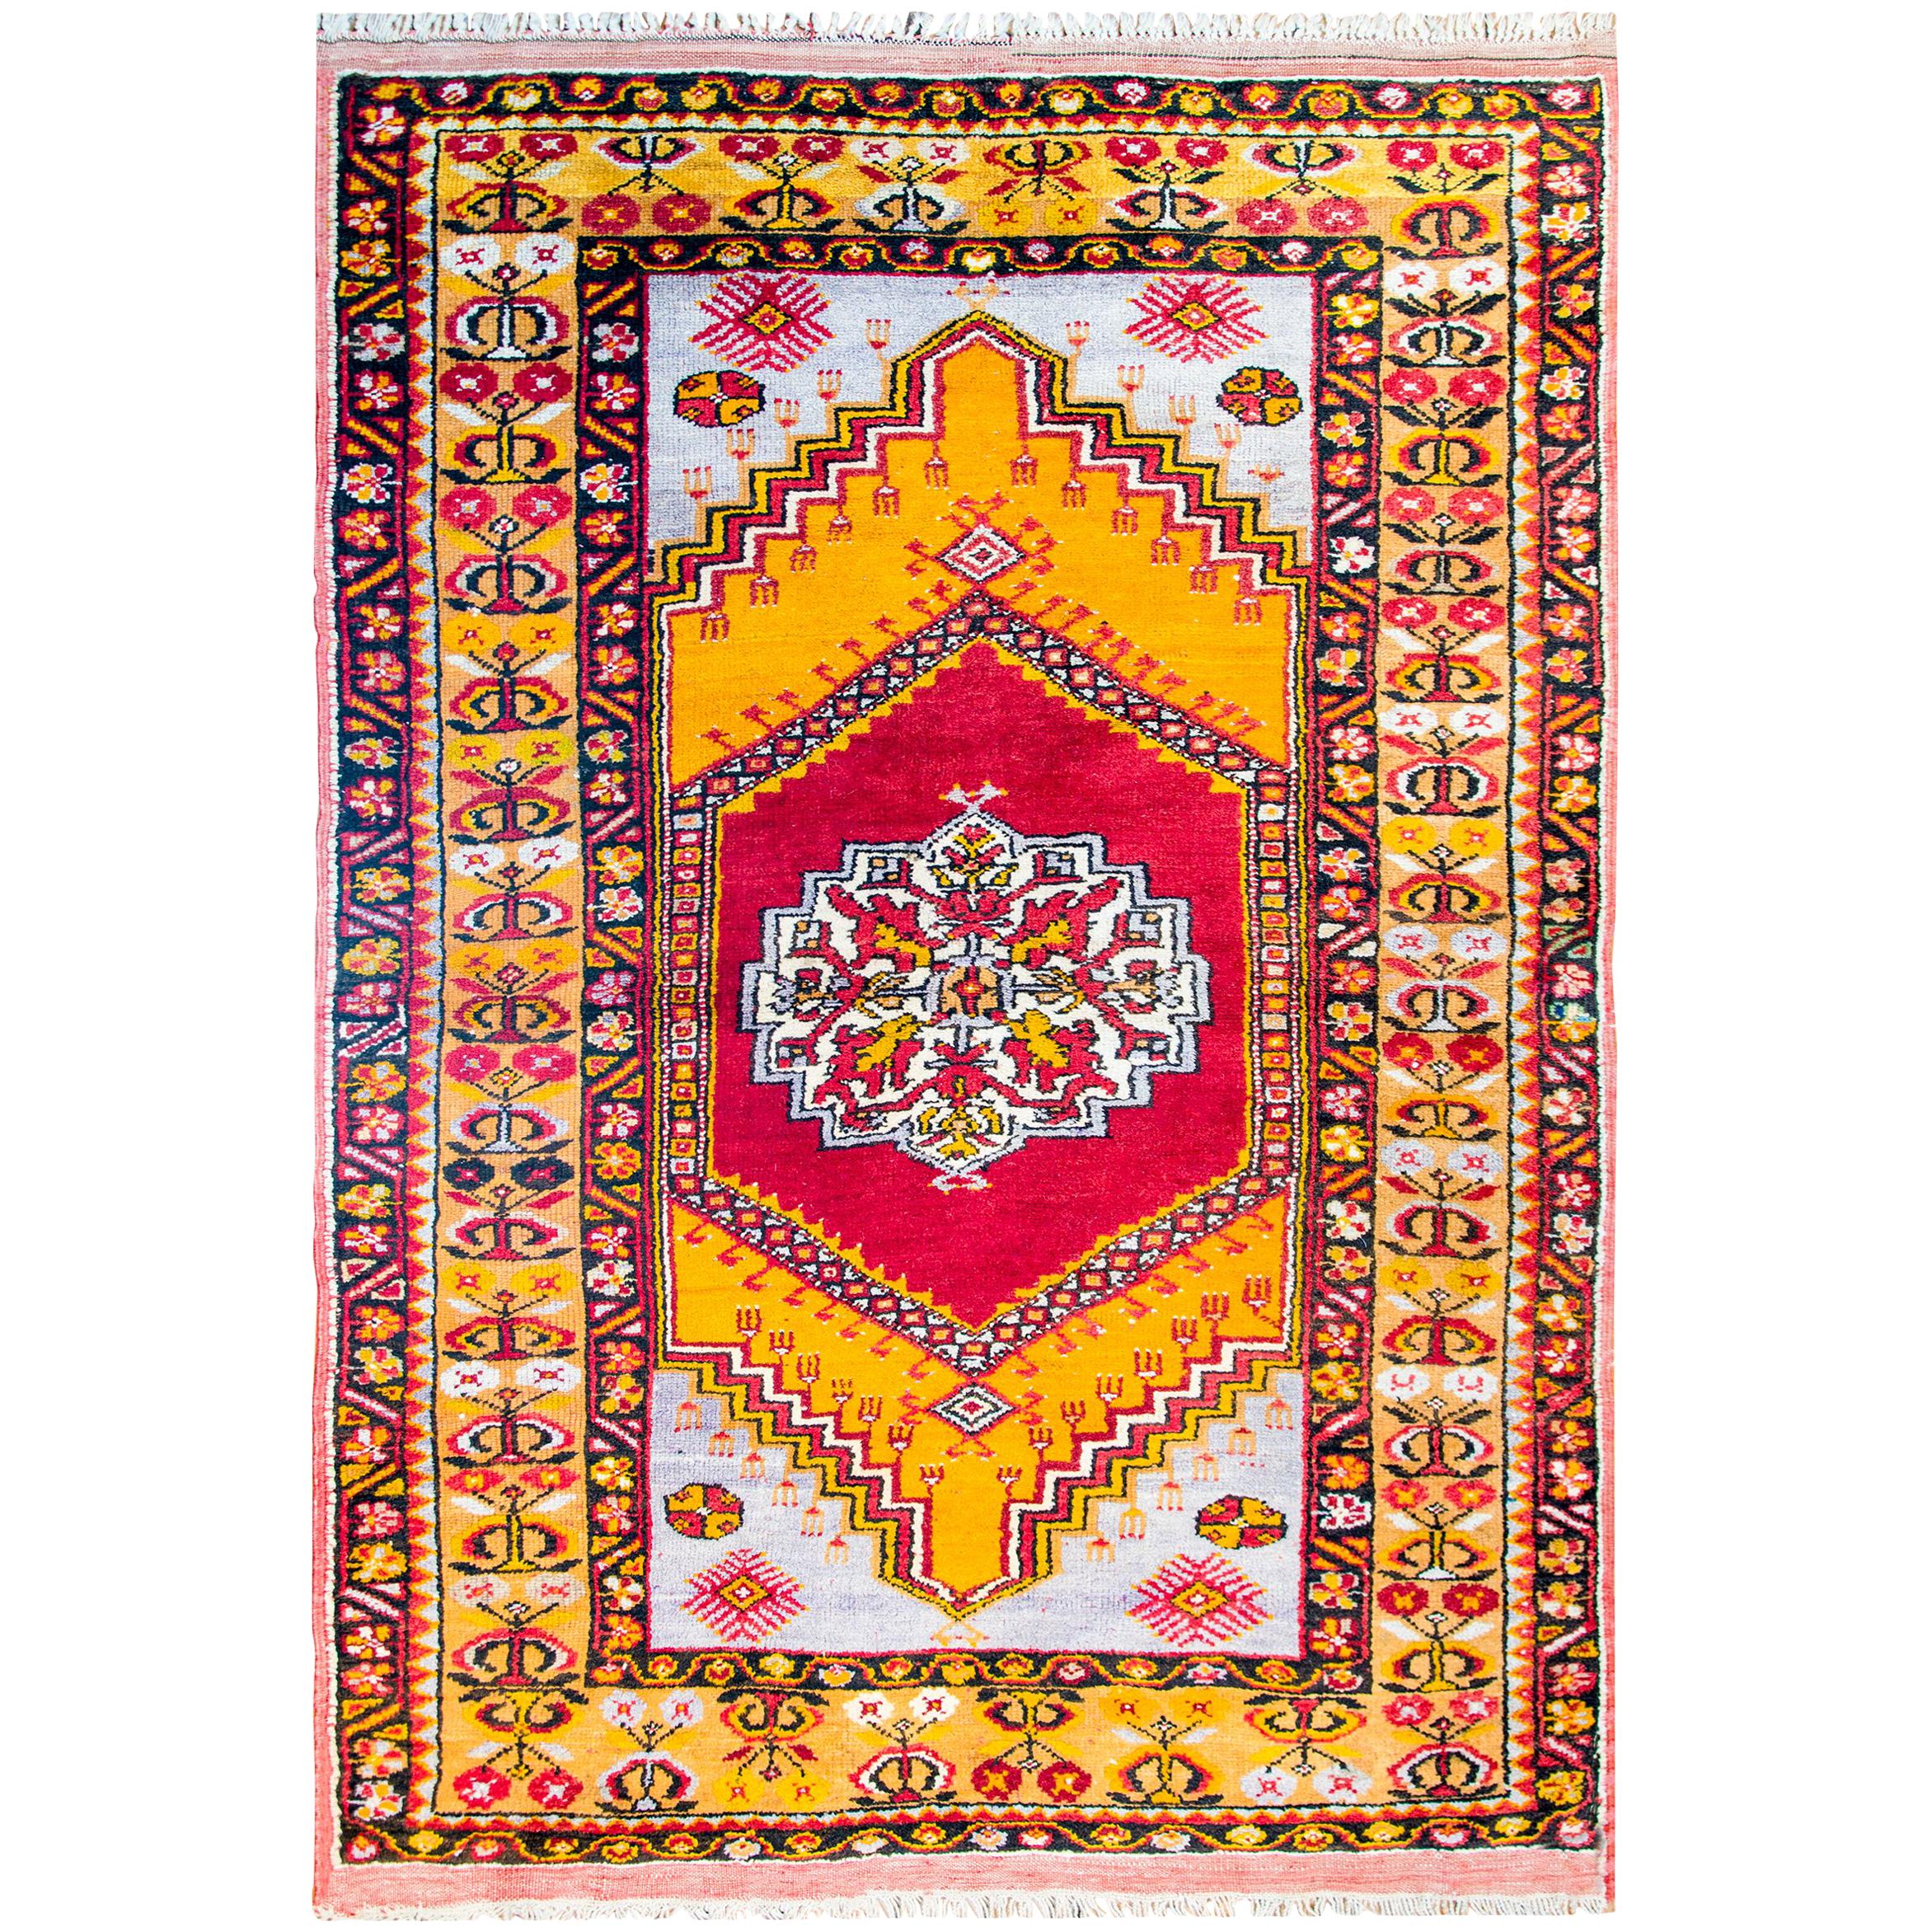 Anatolischer türkischer Teppich des frühen 20. Jahrhunderts